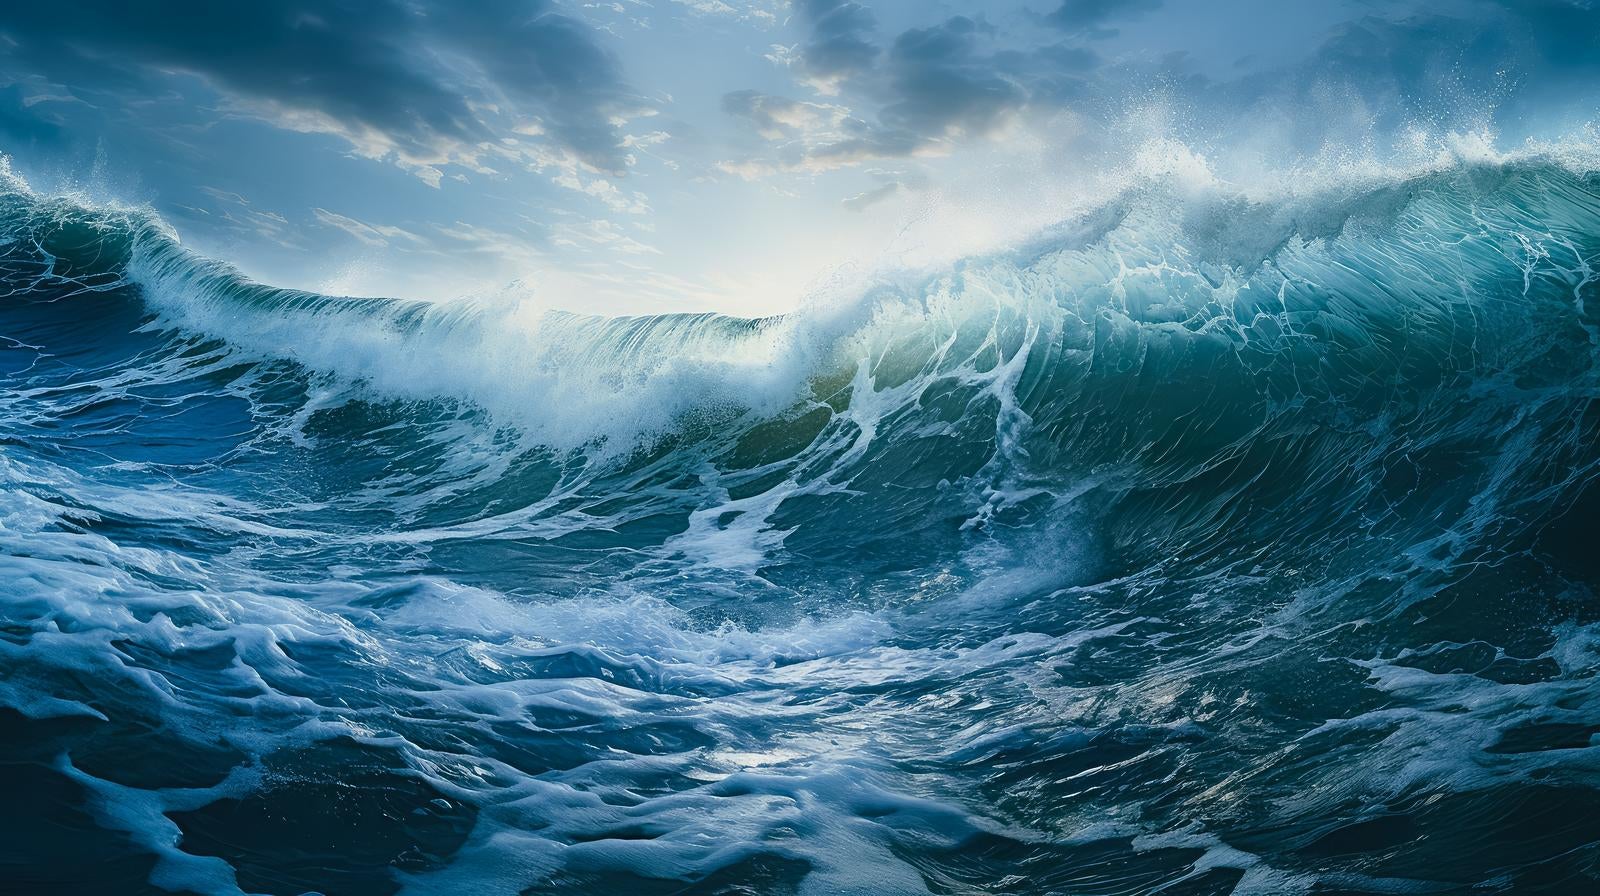 「嵐の襲来、暴風と高波が壮絶な風景」の写真